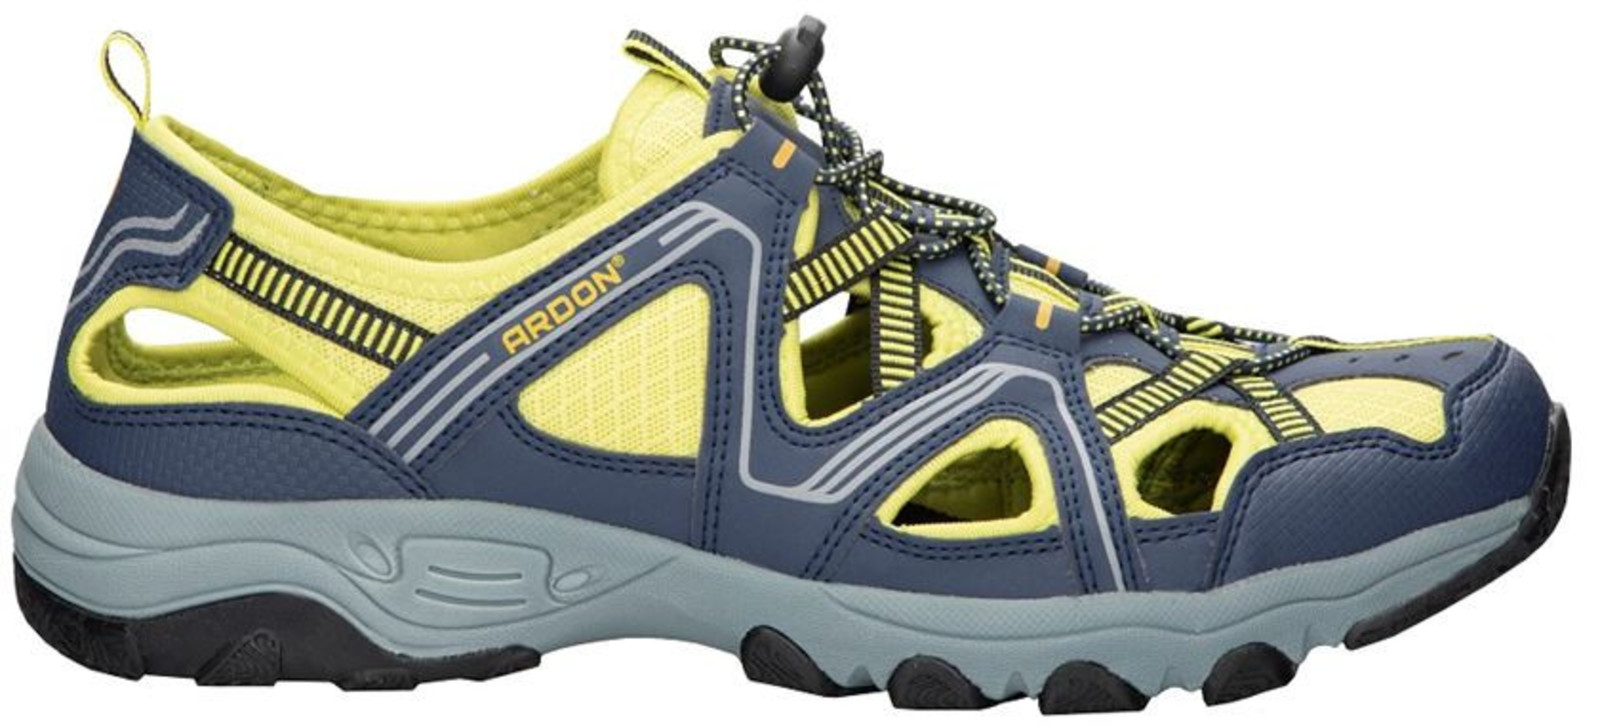 Trekové sandále Ardon Strand - veľkosť: 44, farba: modrá/žltá